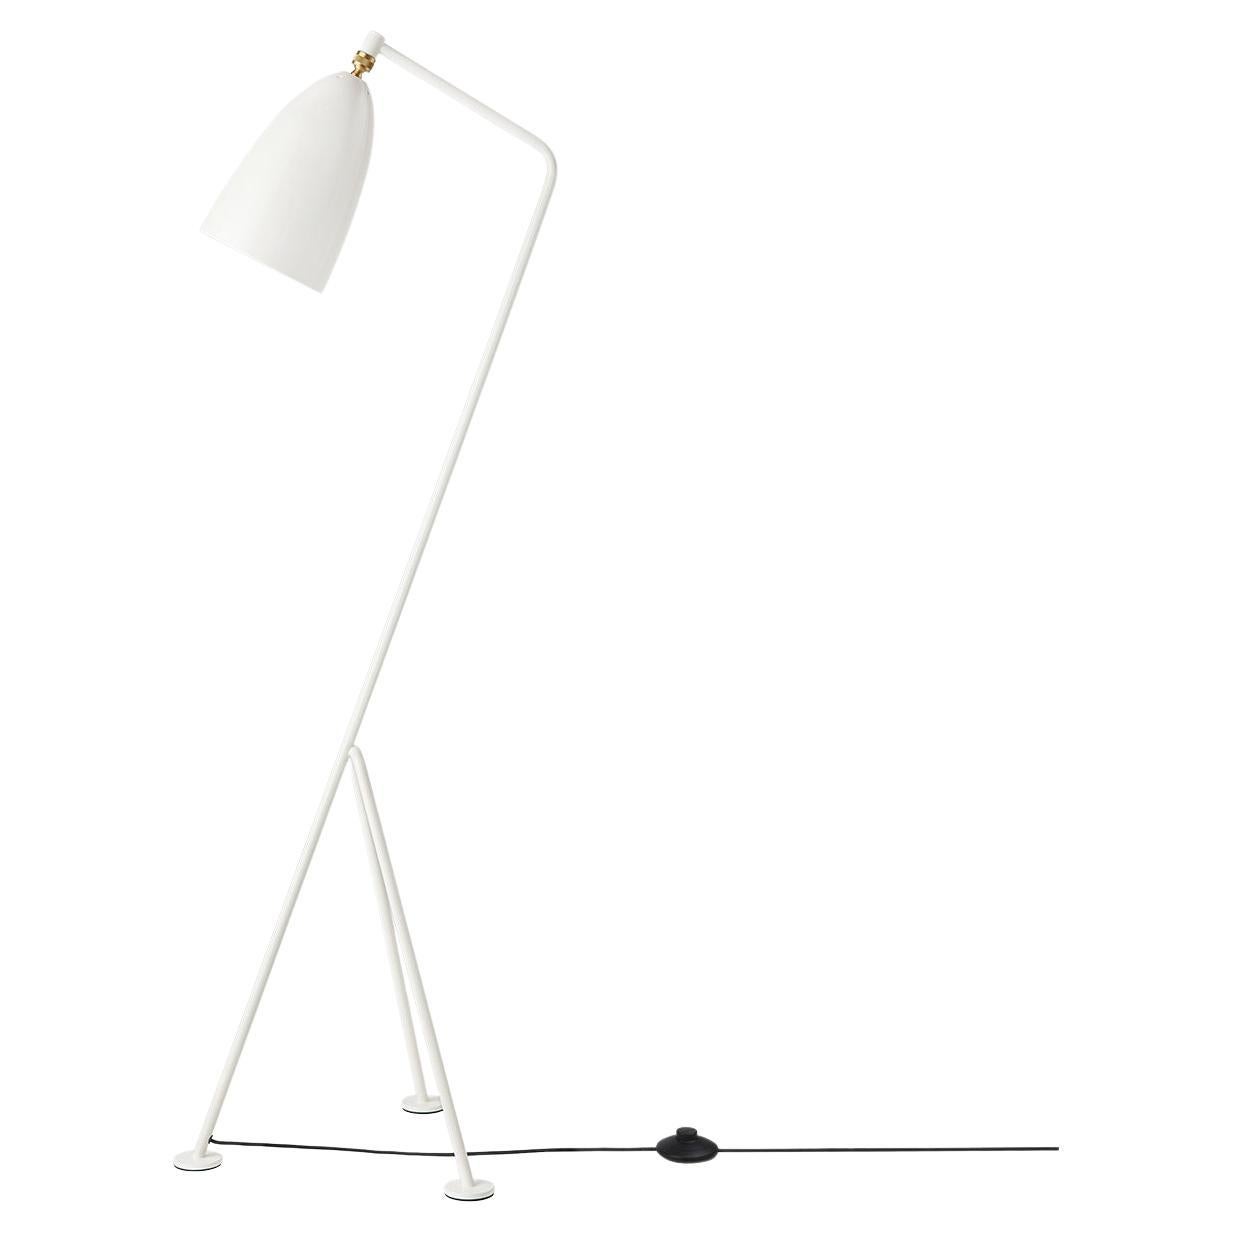 Stehlampe „Grashüpfer“ von Greta Grossman, weißer, glänzender Alabaster